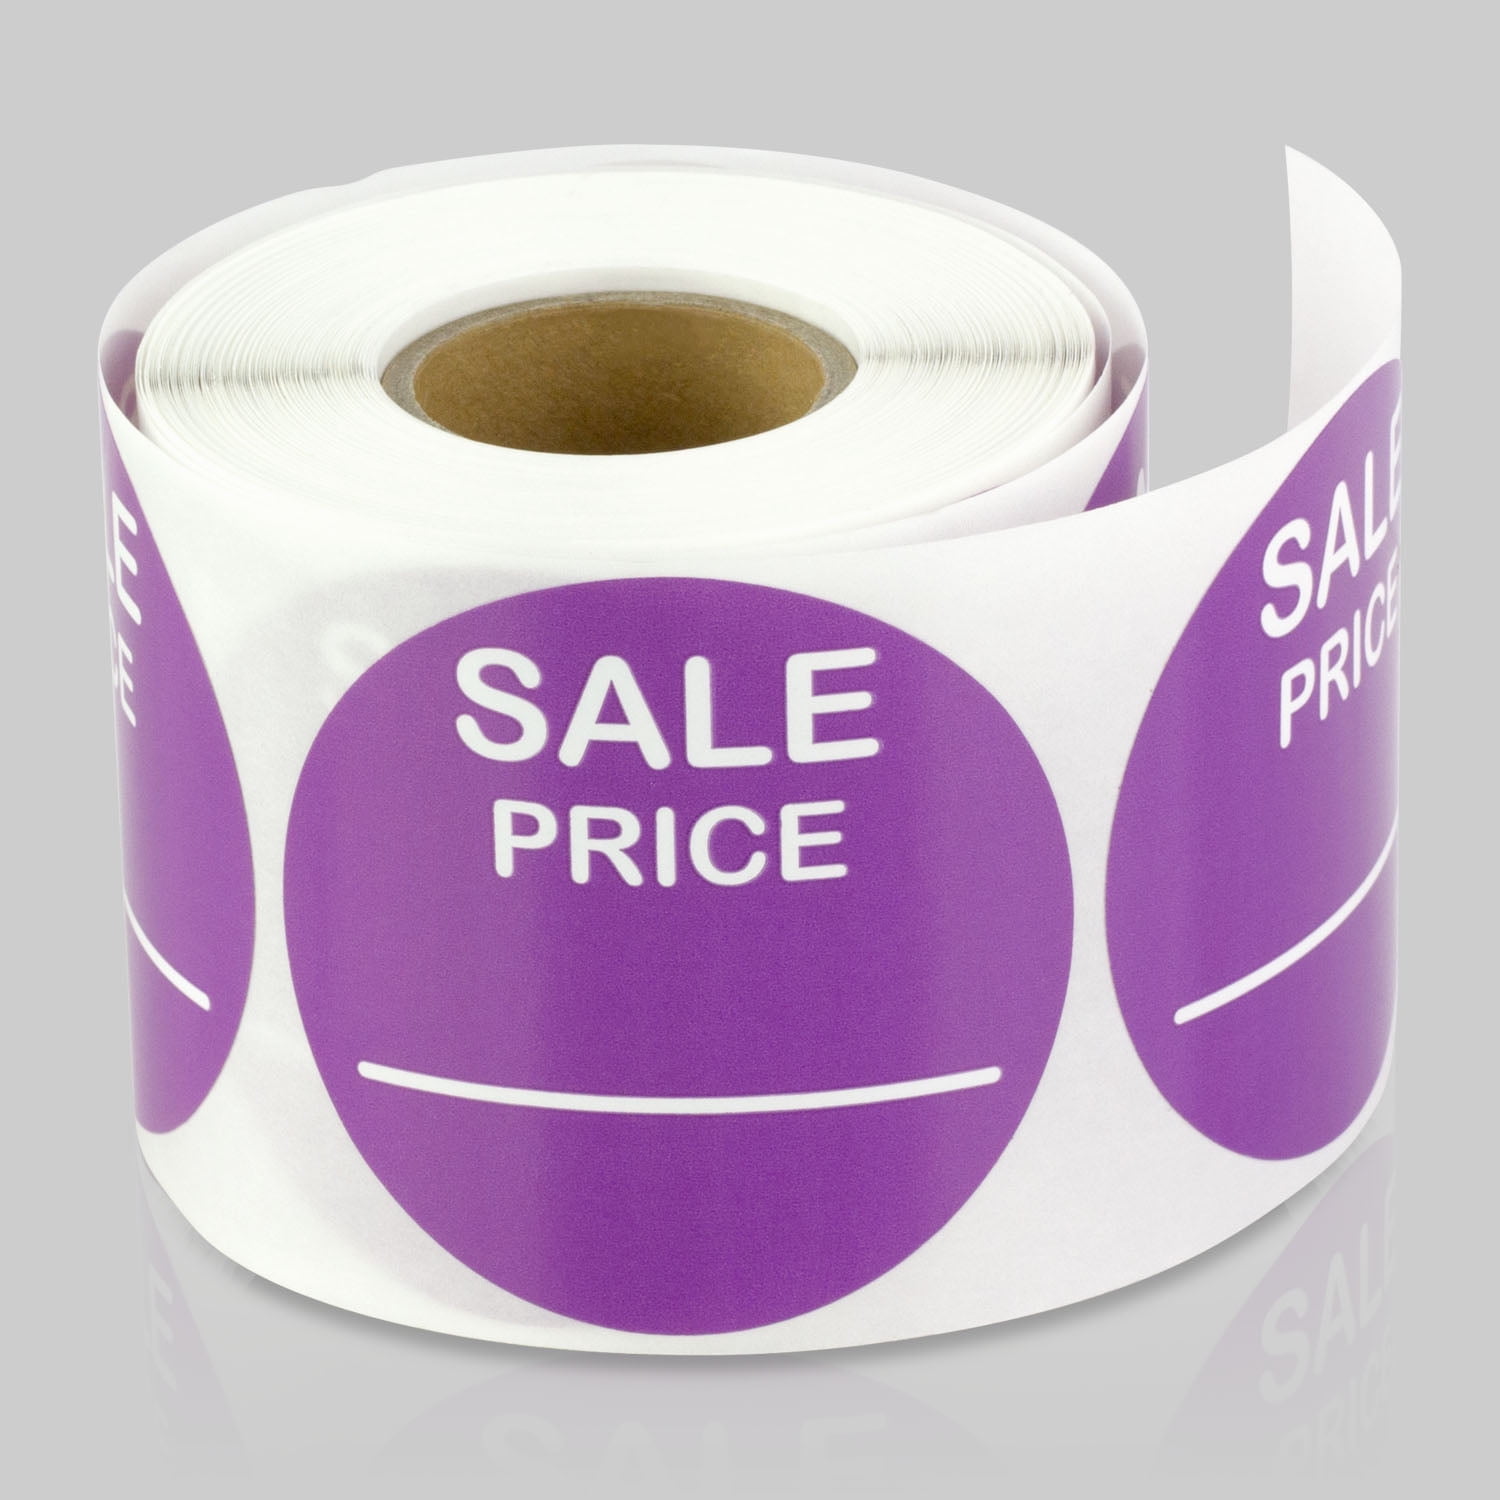 Garage Sale Price Sticker Round Sticker Labels With Price - Temu